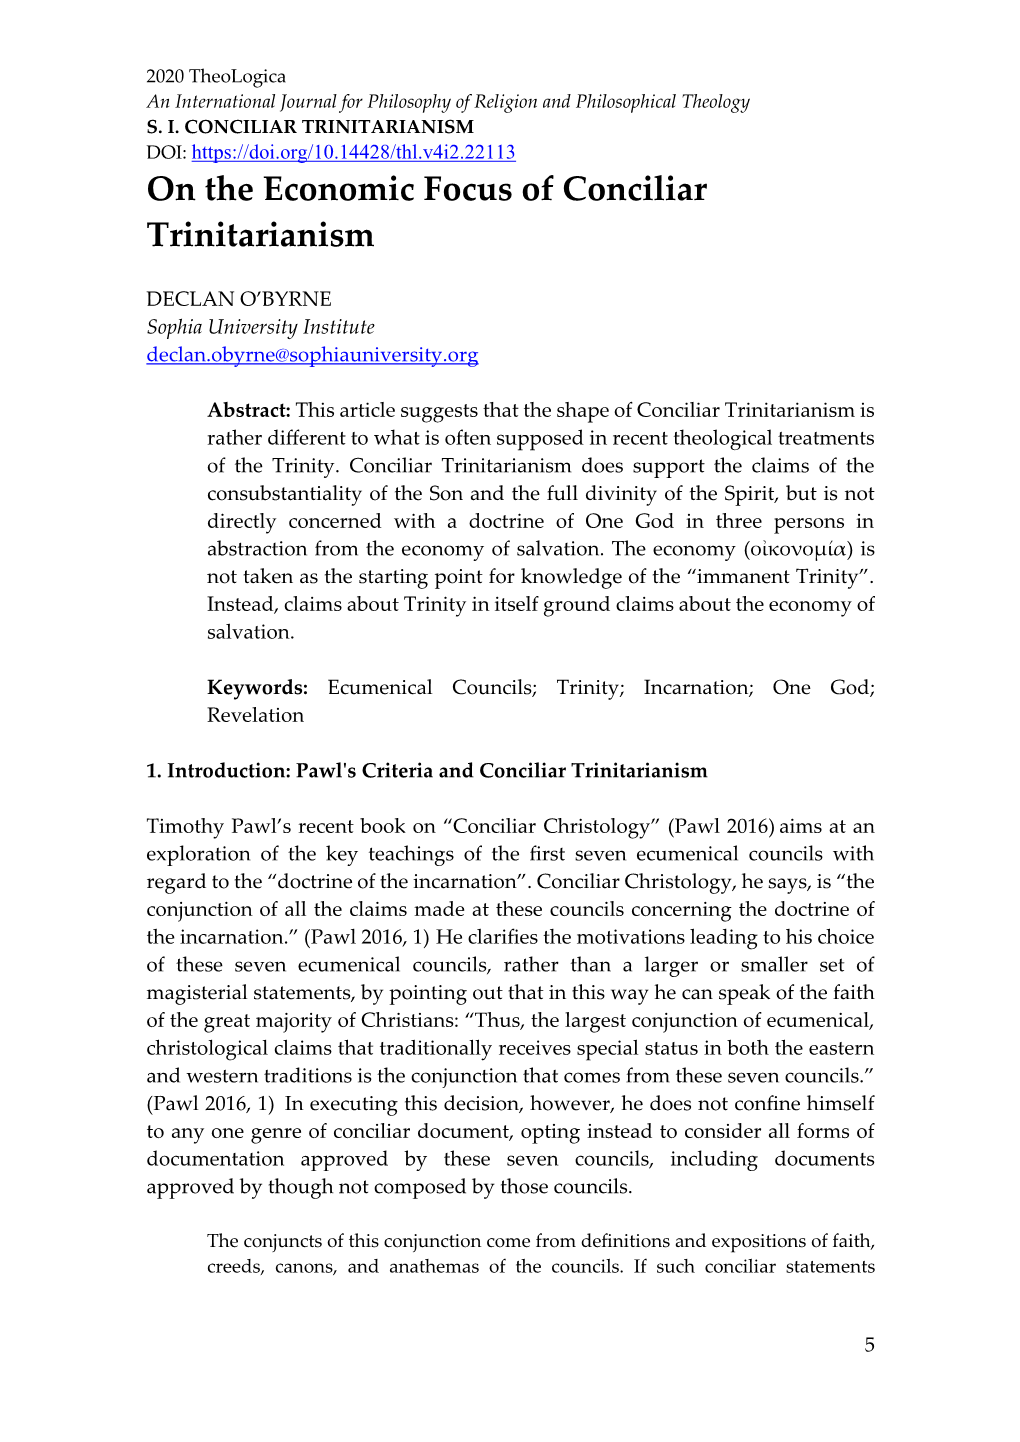 On the Economic Focus of Conciliar Trinitarianism